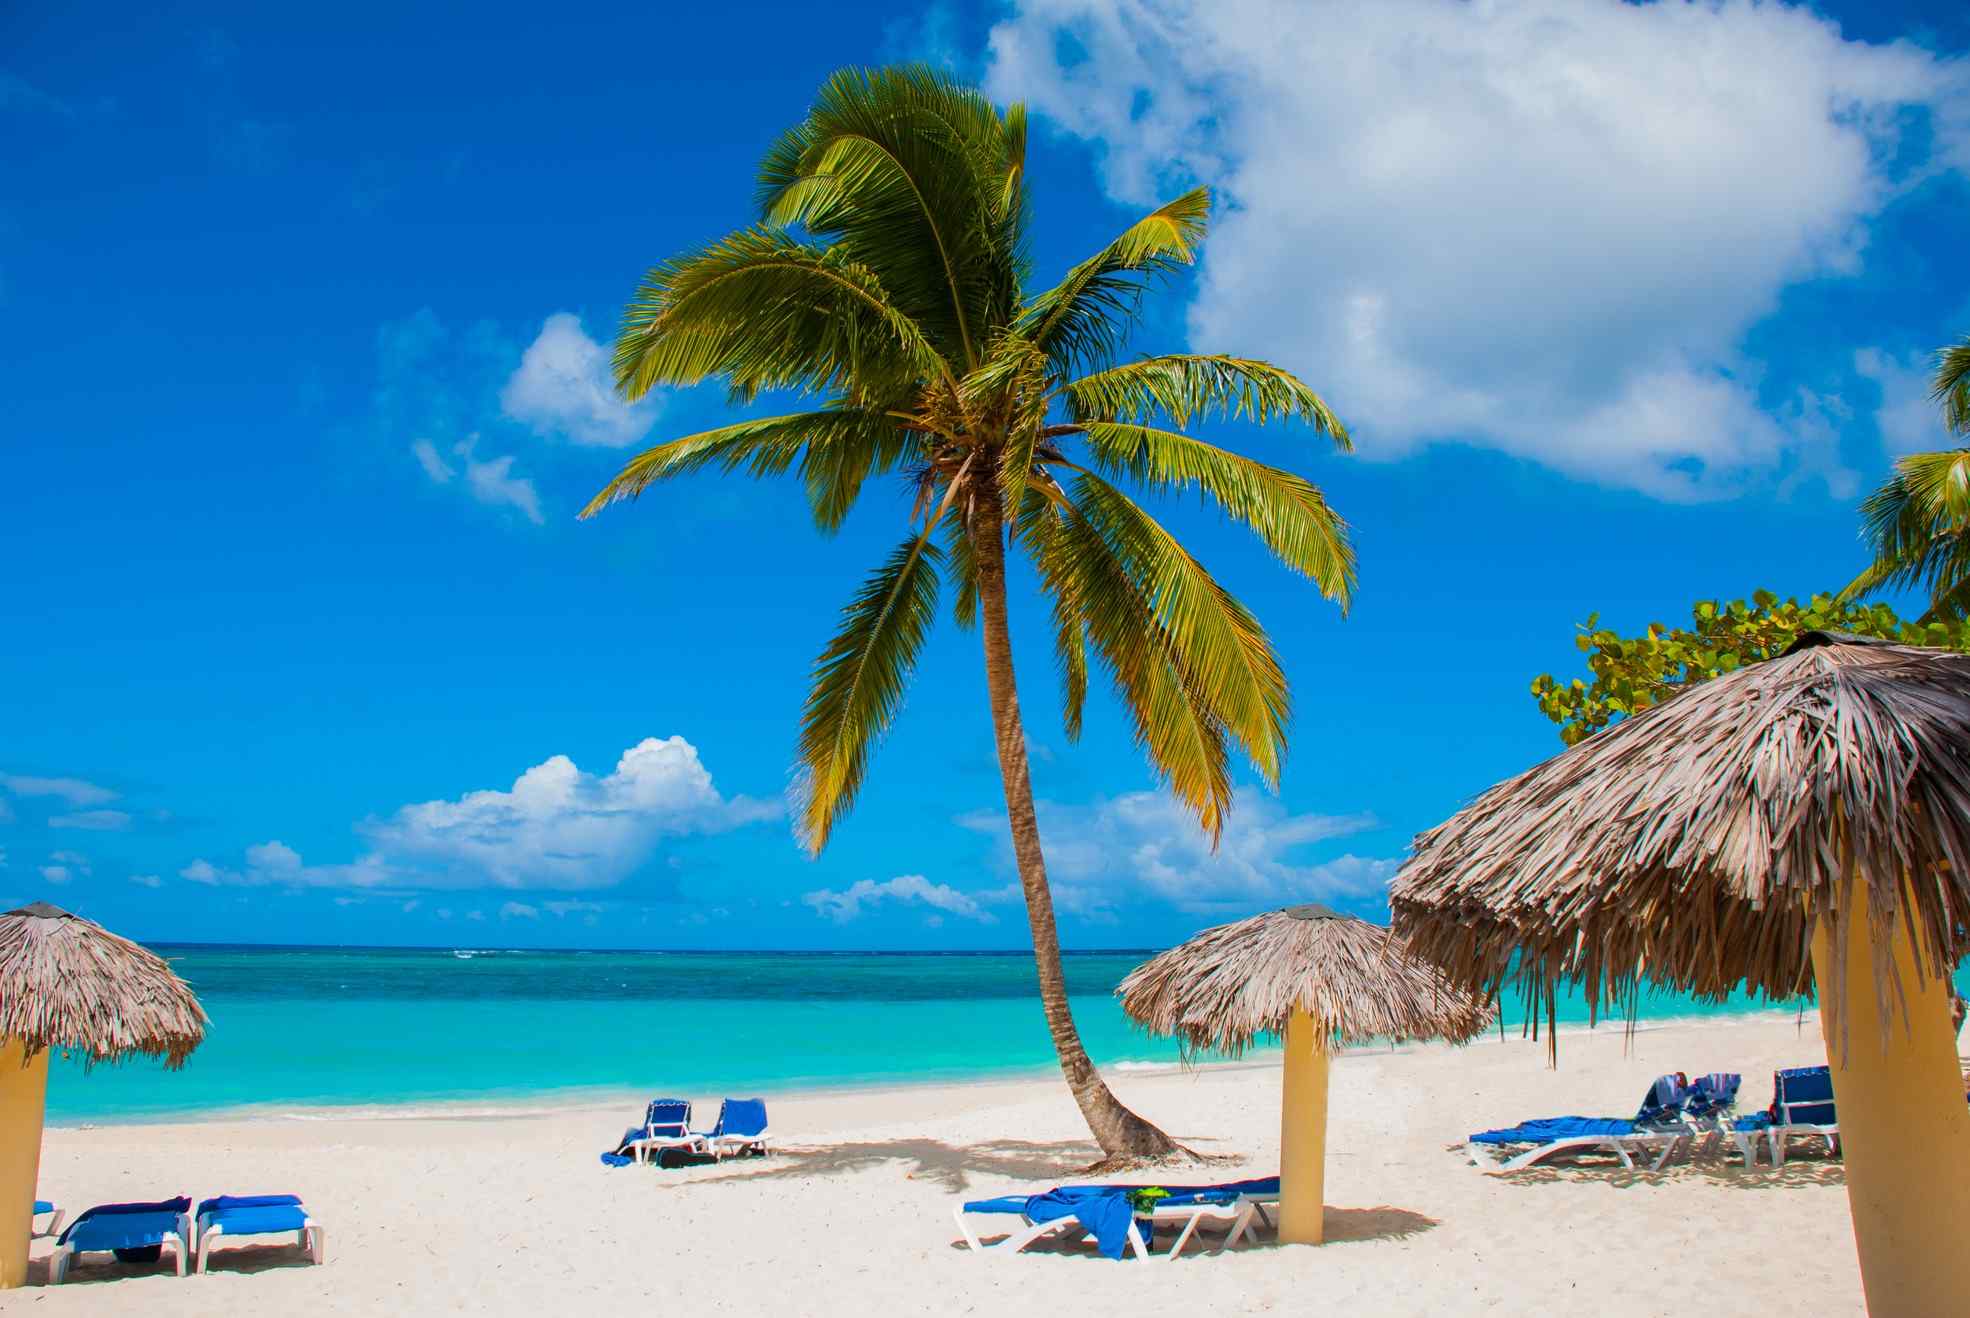 Best beaches in cuba